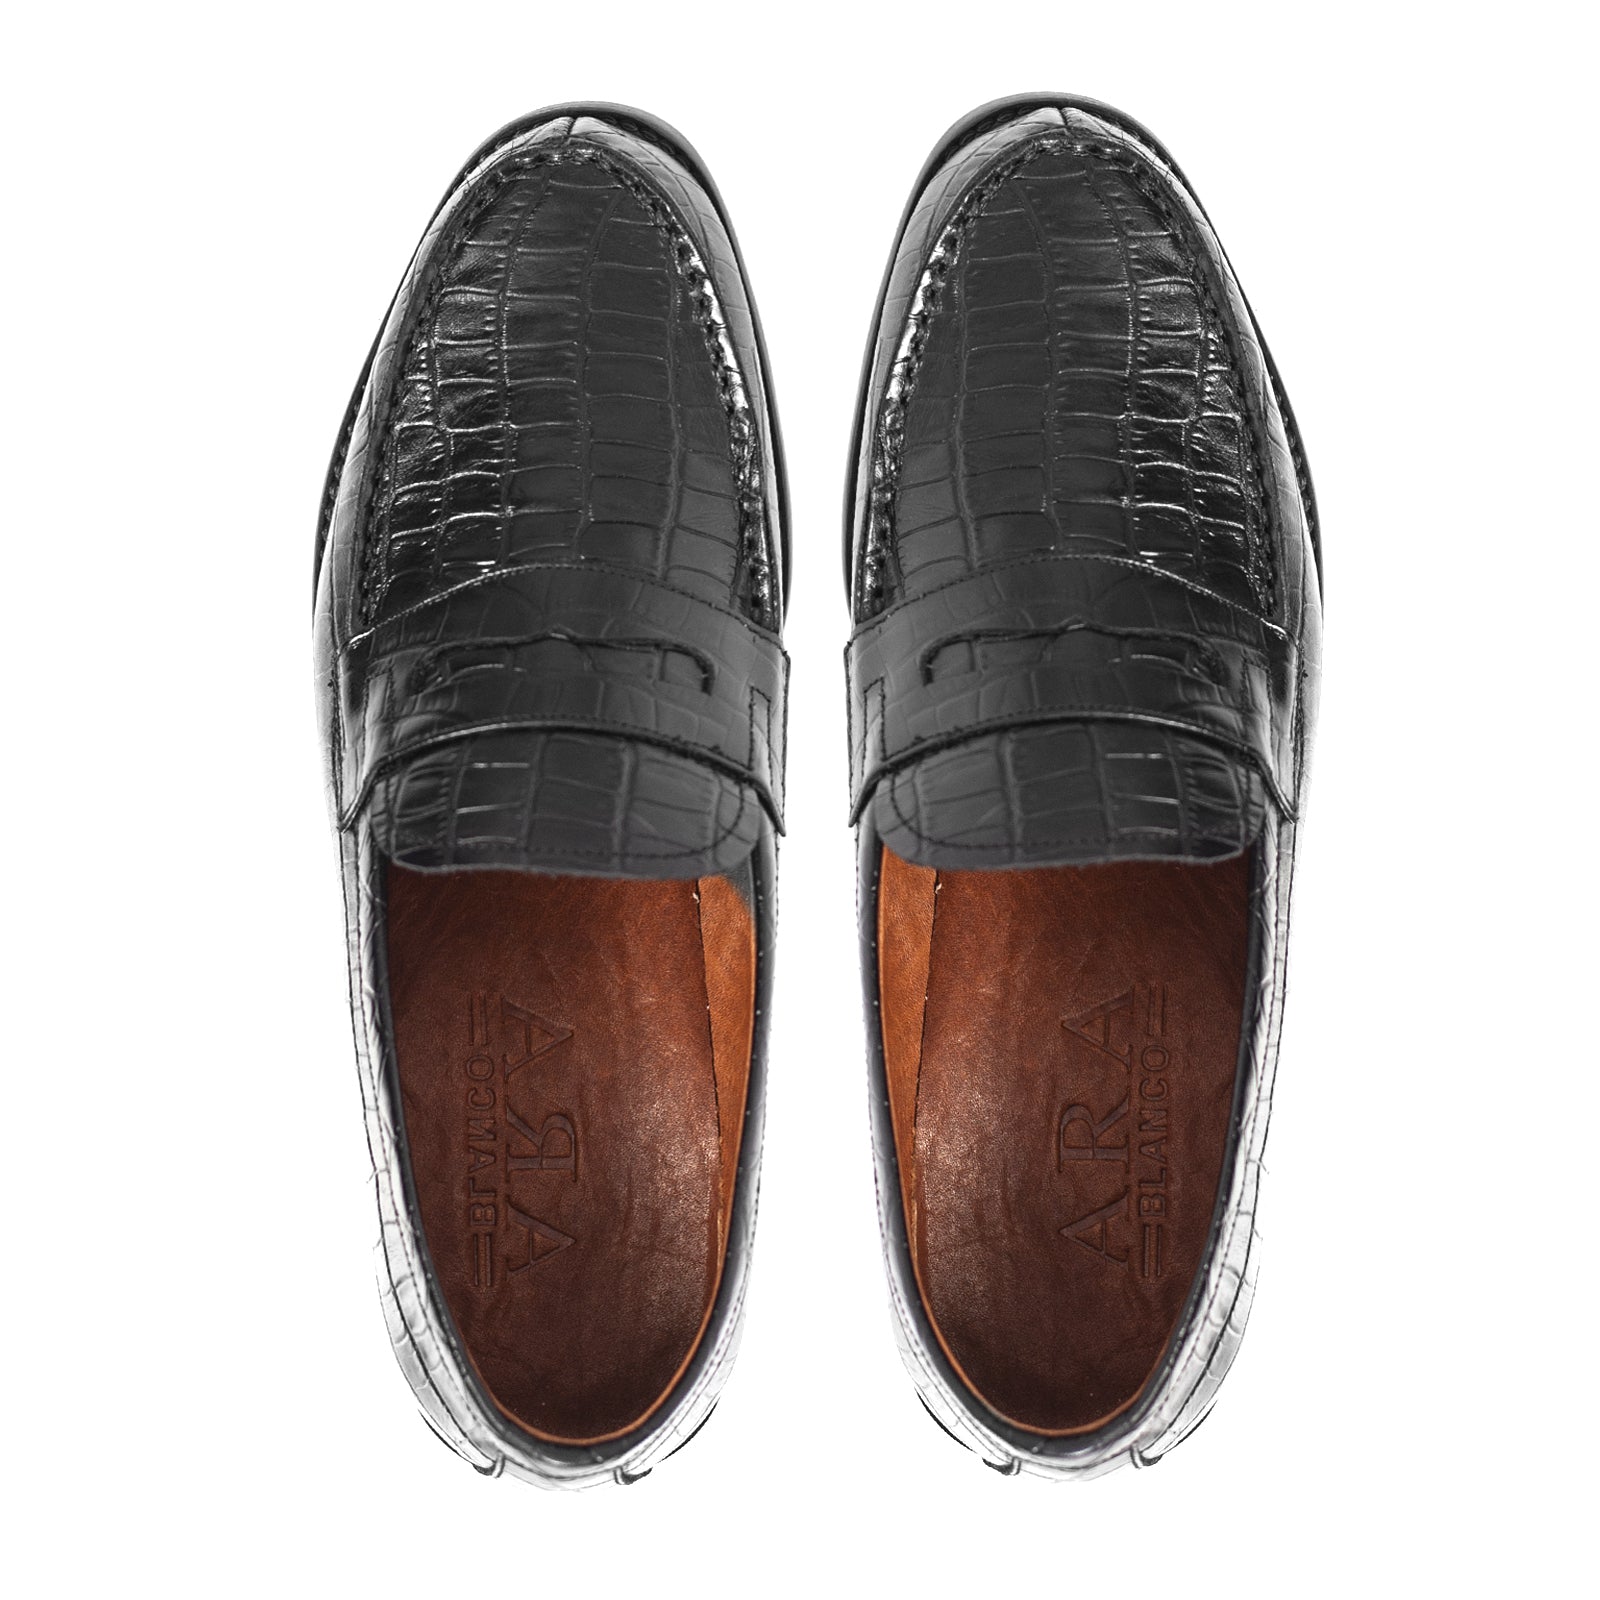 Chaussure Cuir Croco - Noir